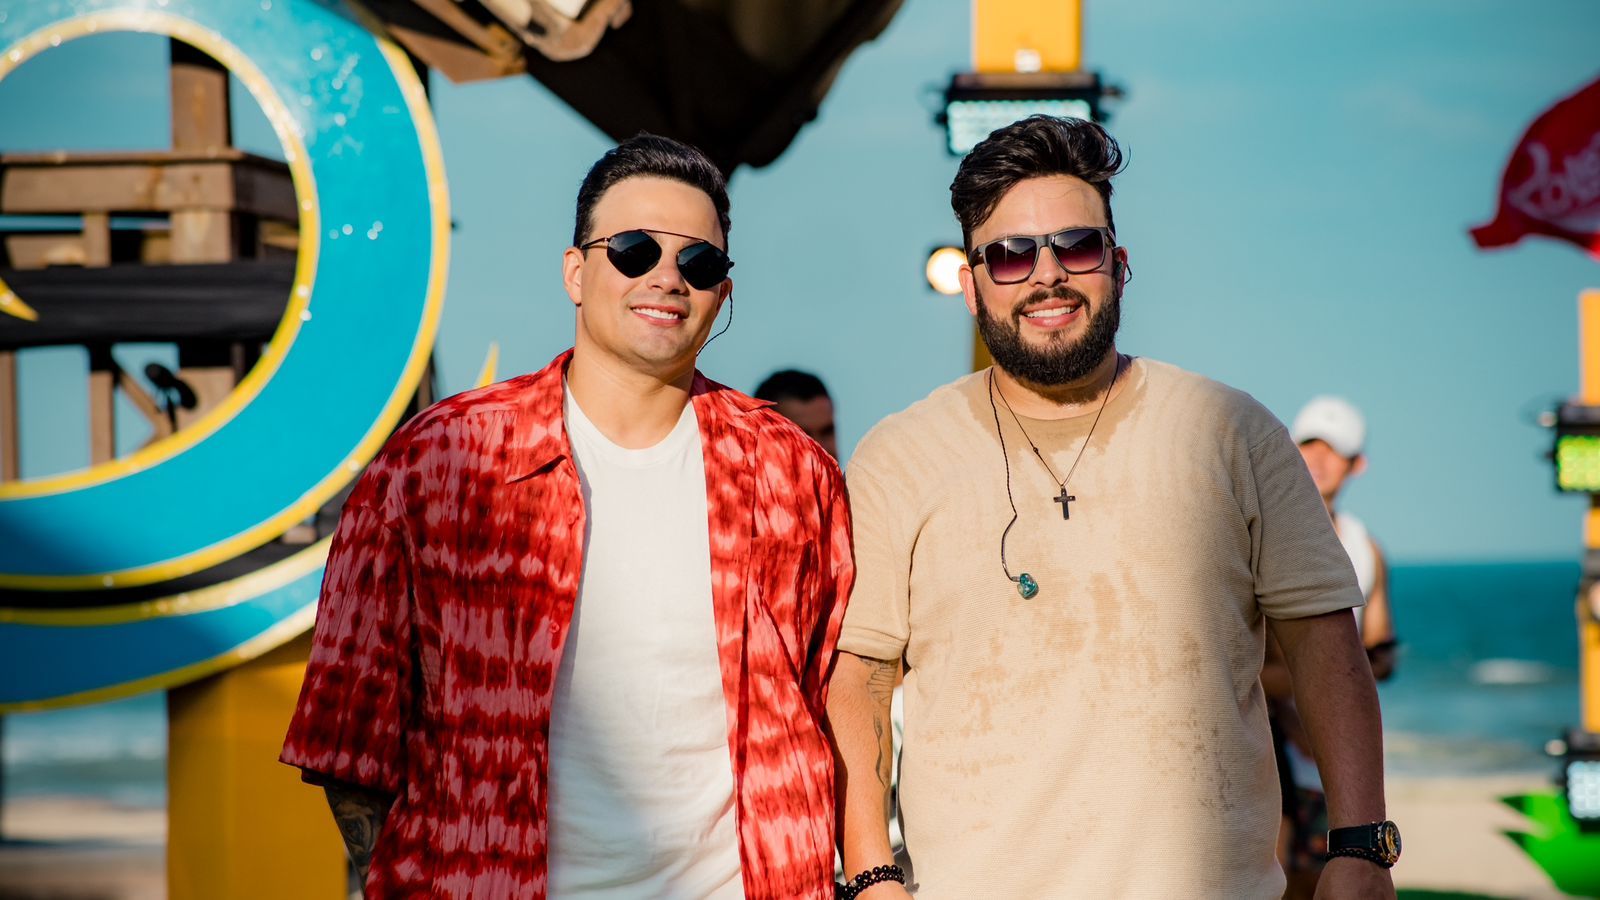 Gustavo Moura e Rafael atingem o topo do Spotify Brasil com single 'Digitando'